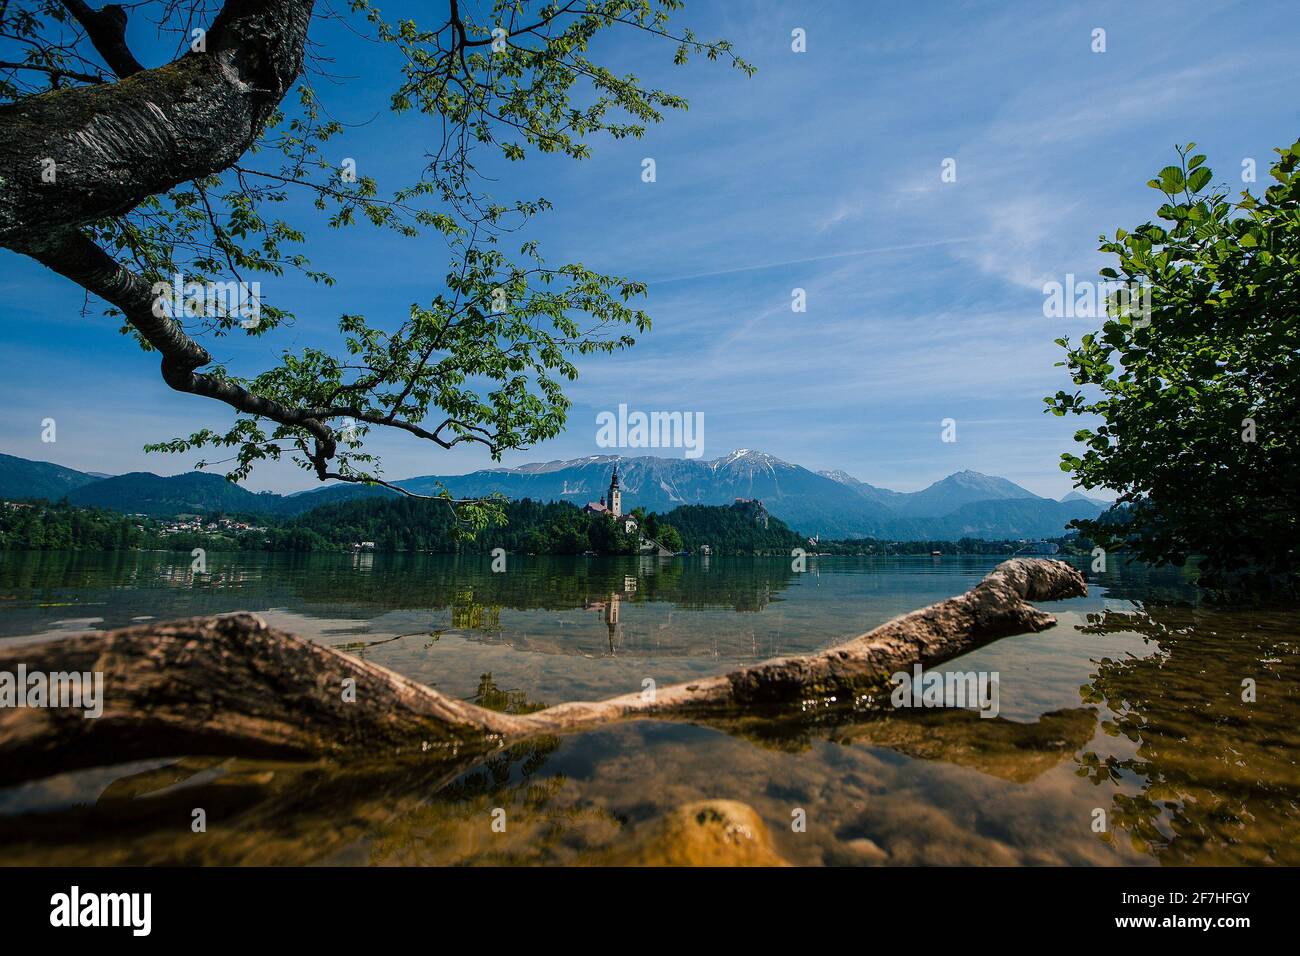 Panorama der Insel Bled mit Kirche an einem sonnigen Tag. Flaches Foto mit Baum und Ast im Wasser im Vordergrund. Wunderschönes Naturpanorama Stockfoto